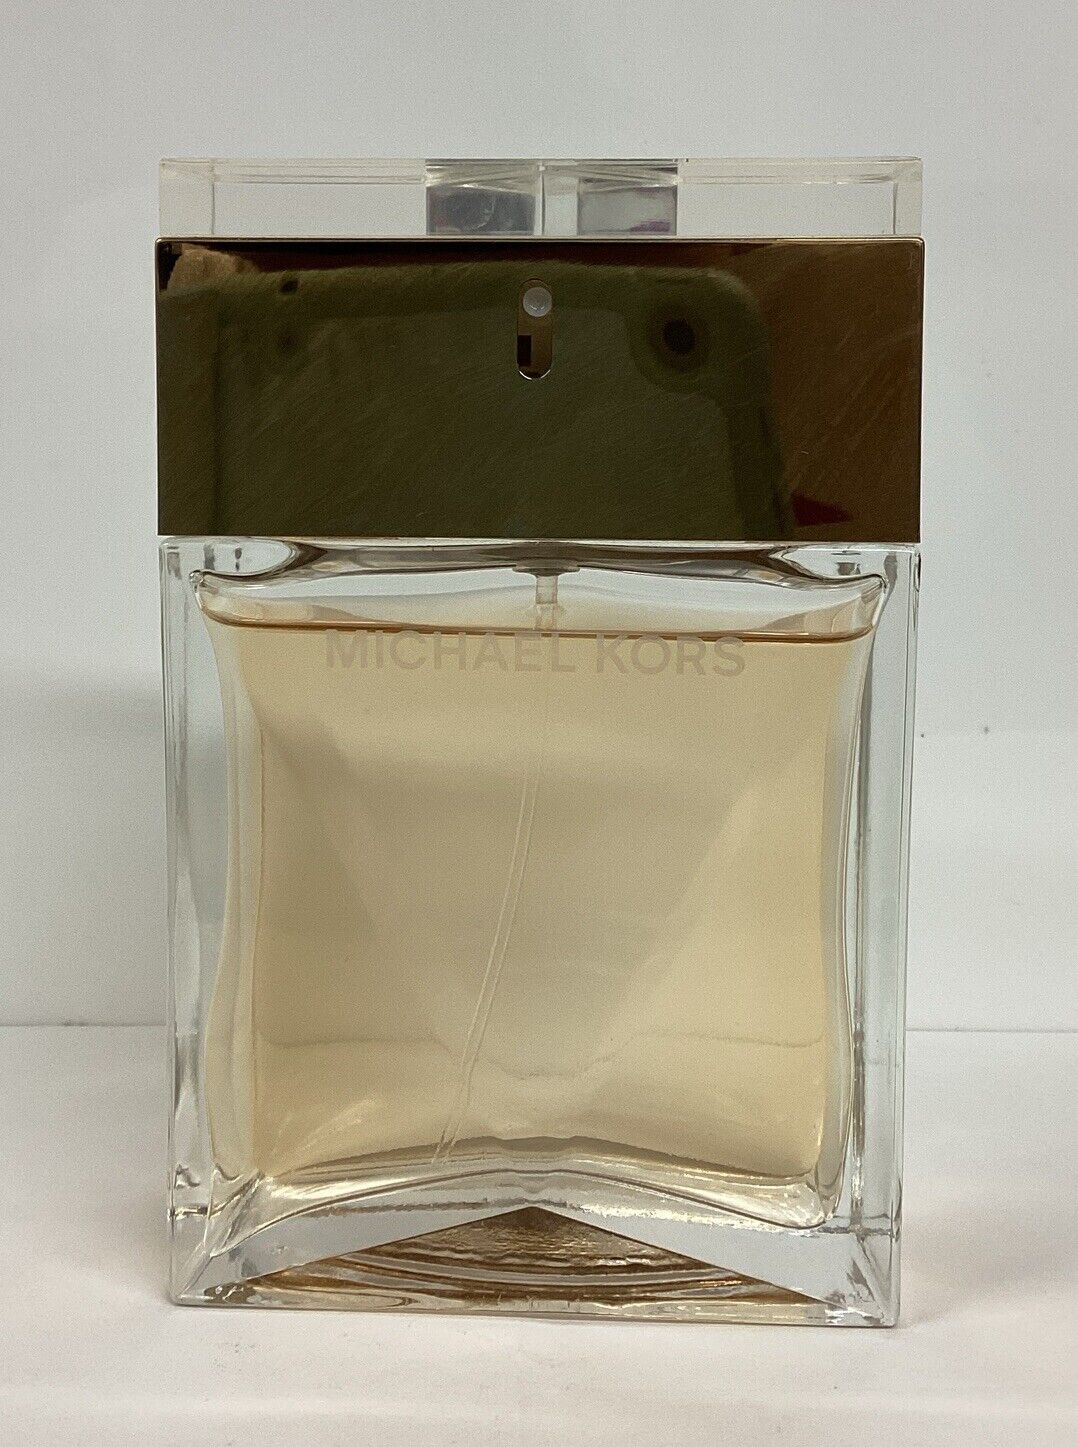 Michael Kors Eau De Parfum For Women 3.4oz 90%FULL  As Pictured, No Box  RARE